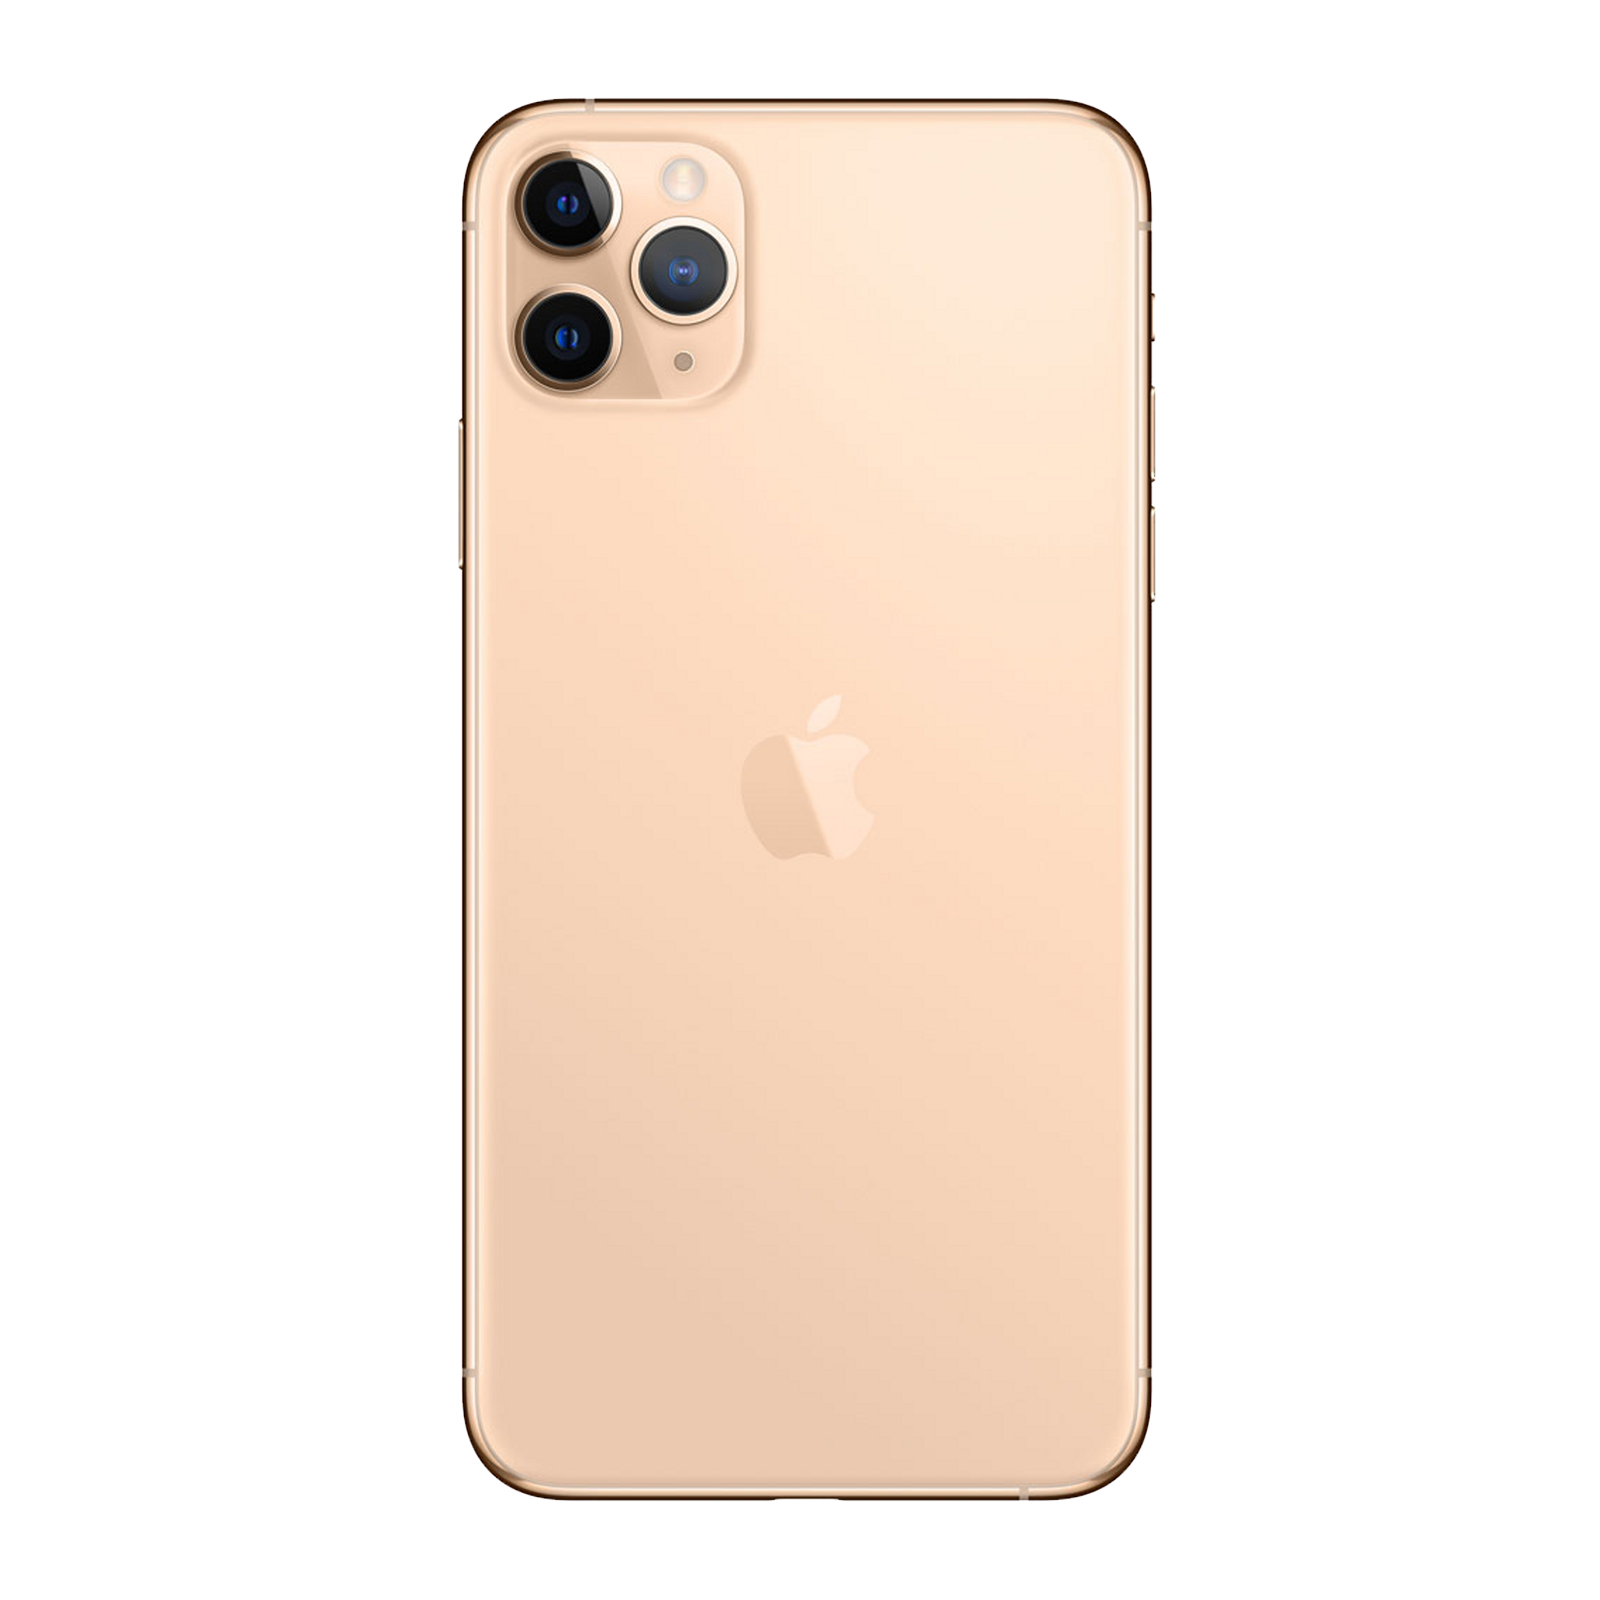 Apple iPhone 11 Pro Max 256GB Gold Pristine - T-Mobile